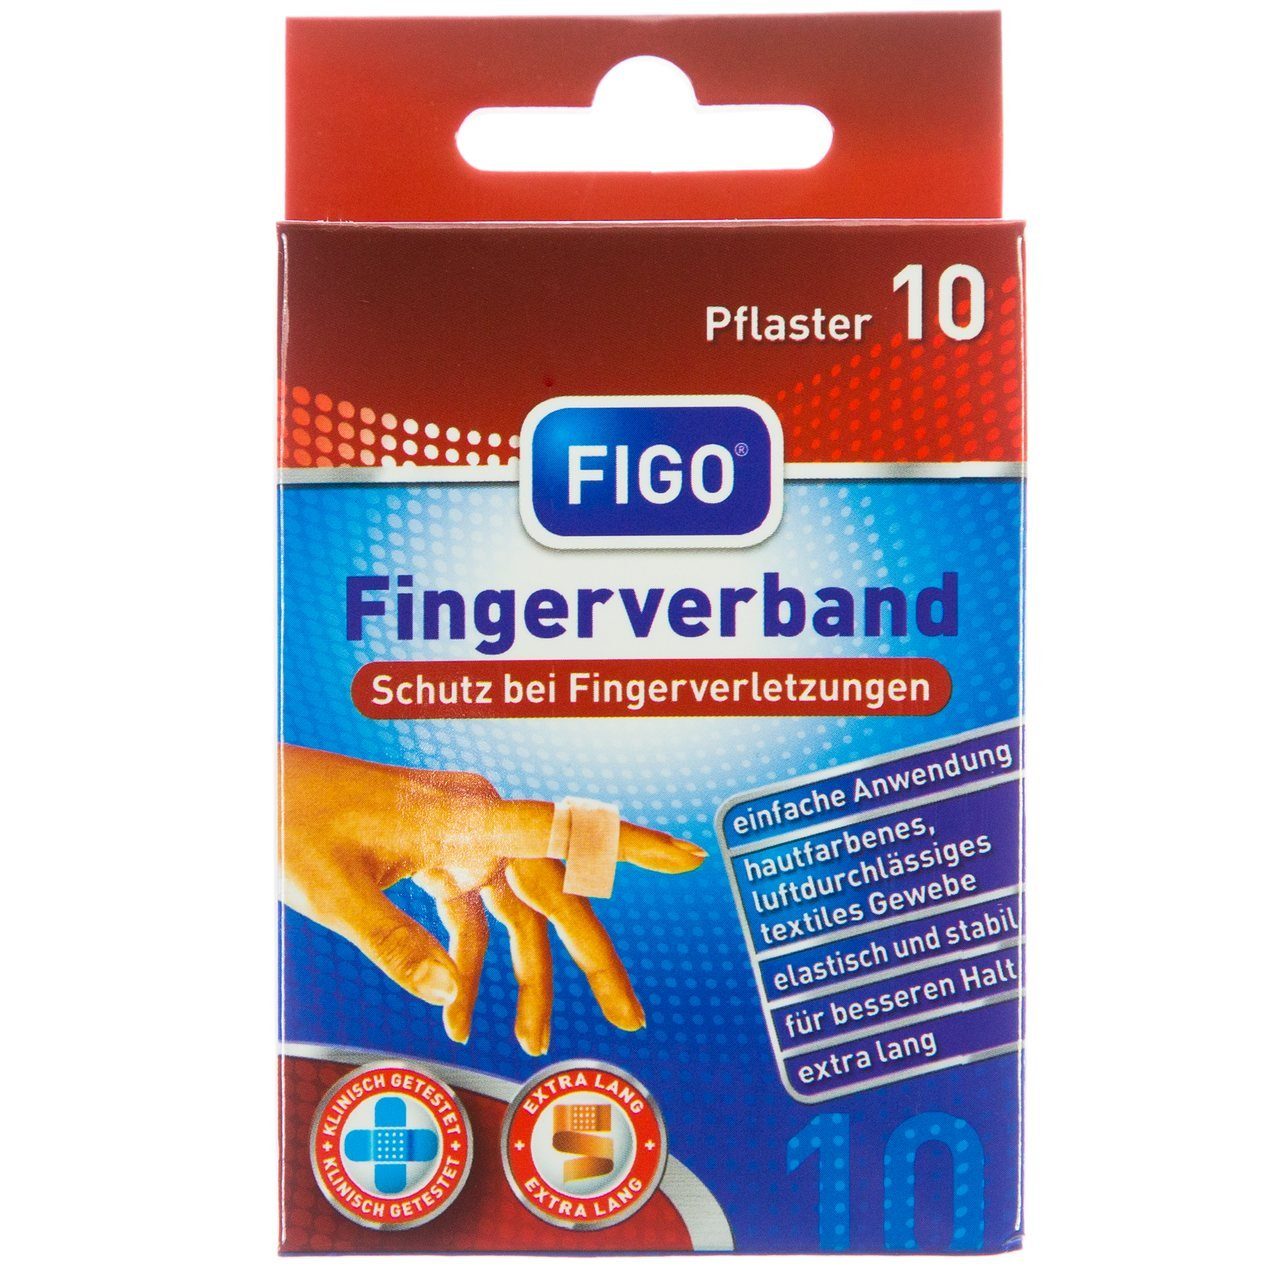 https://i.otto.de/i/otto/6cc7b53d-1b9f-5a33-8667-330c80eafea6/figo-wundpflaster-figo-fingerverband-10-er-pflaster-lang-12-cm-x-2-cm-wundpflaster-pflas-set-10-st-pflaster-universal-pflaster-heftpflaster-fingerpflaster-pflasterverband.jpg?$formatz$